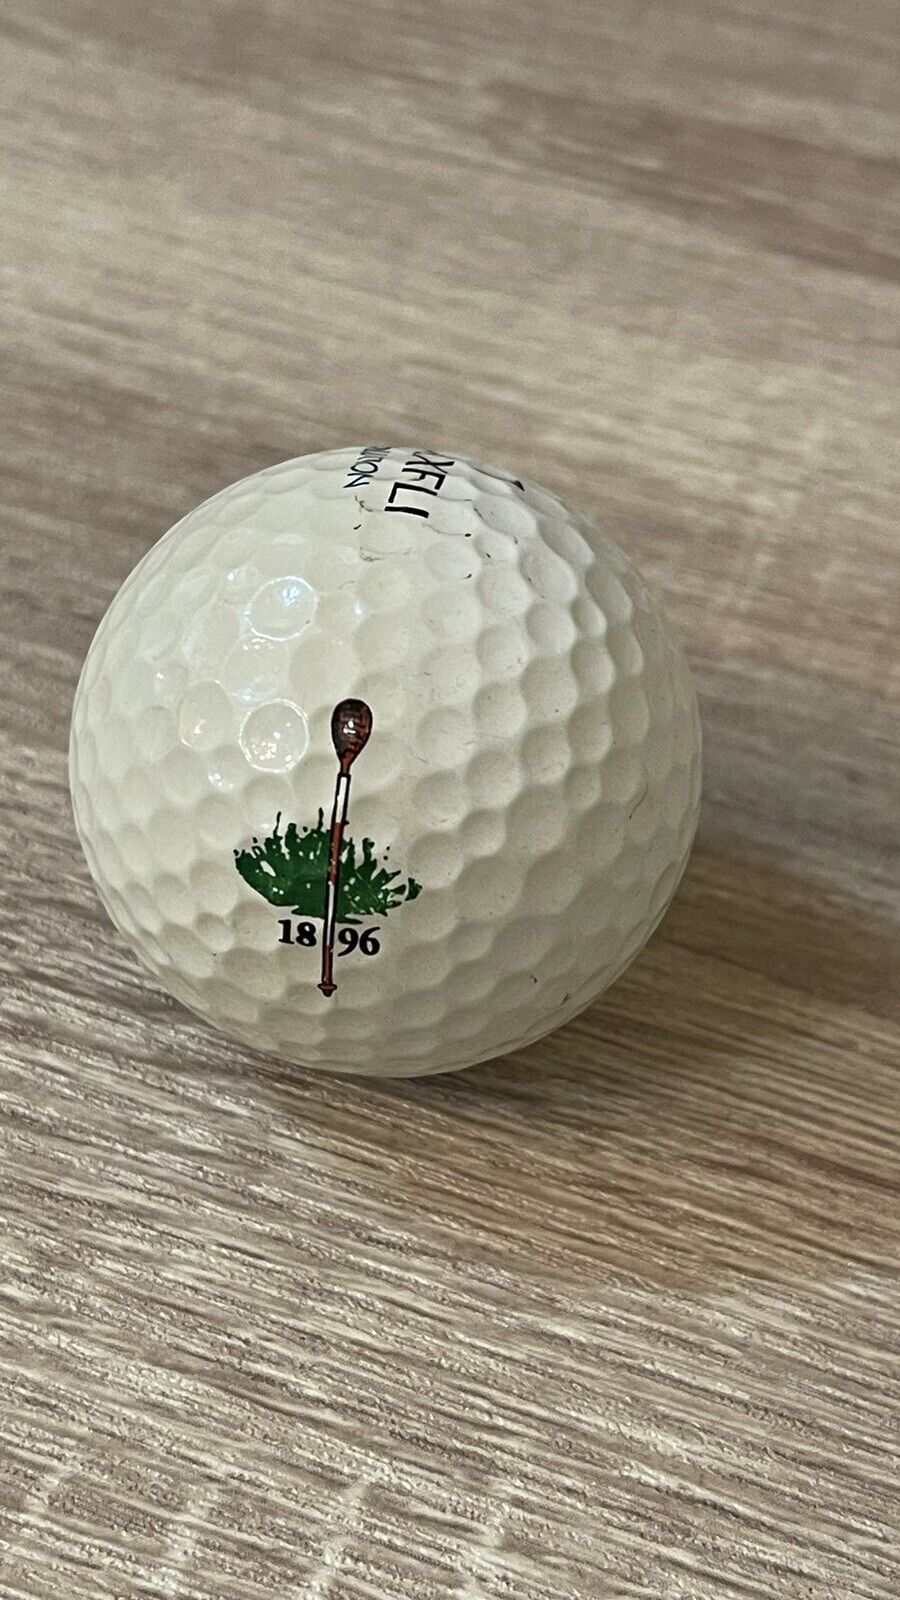 Merion Golf Club - Logo Golf Ball - Maxfli - Used - Wicker Baskets